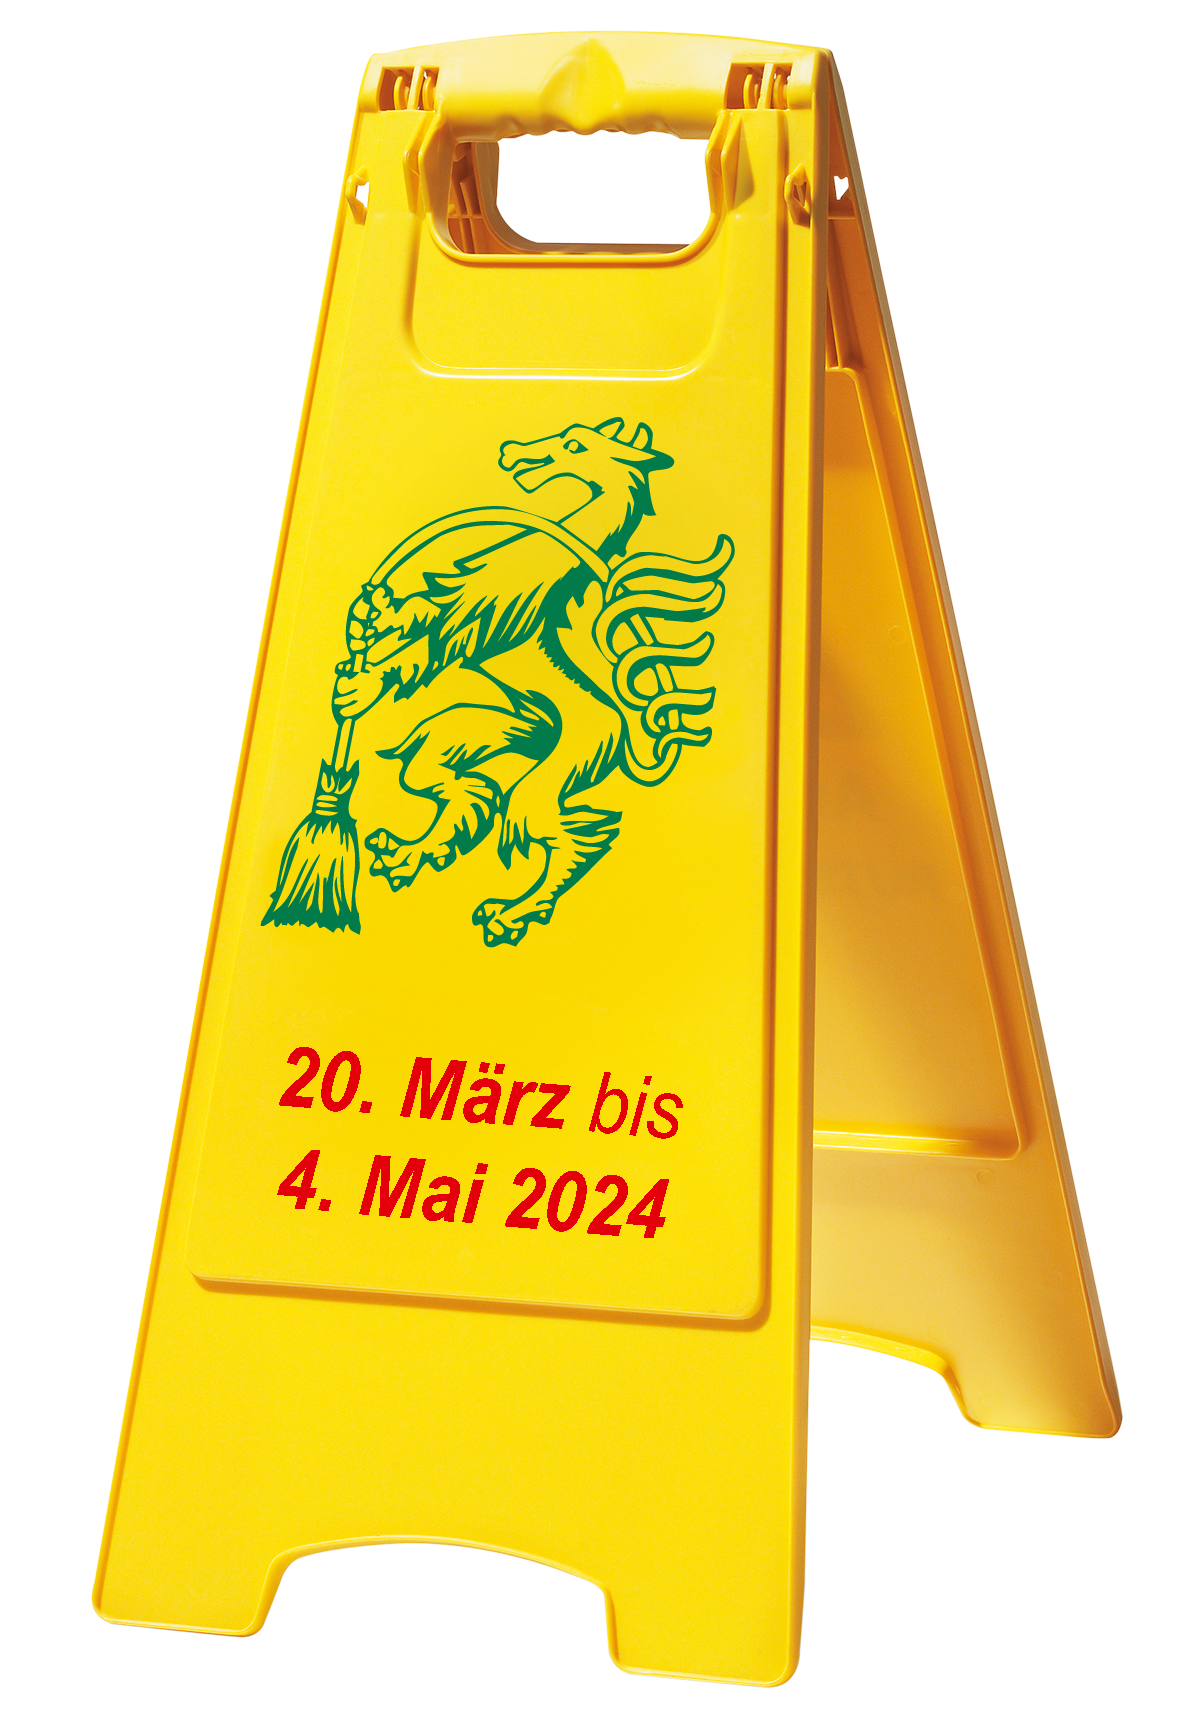 Die Aktion findet dieses Jahr von 20. März bis 4. Mai 2024 statt  © Land Steiermark / A14